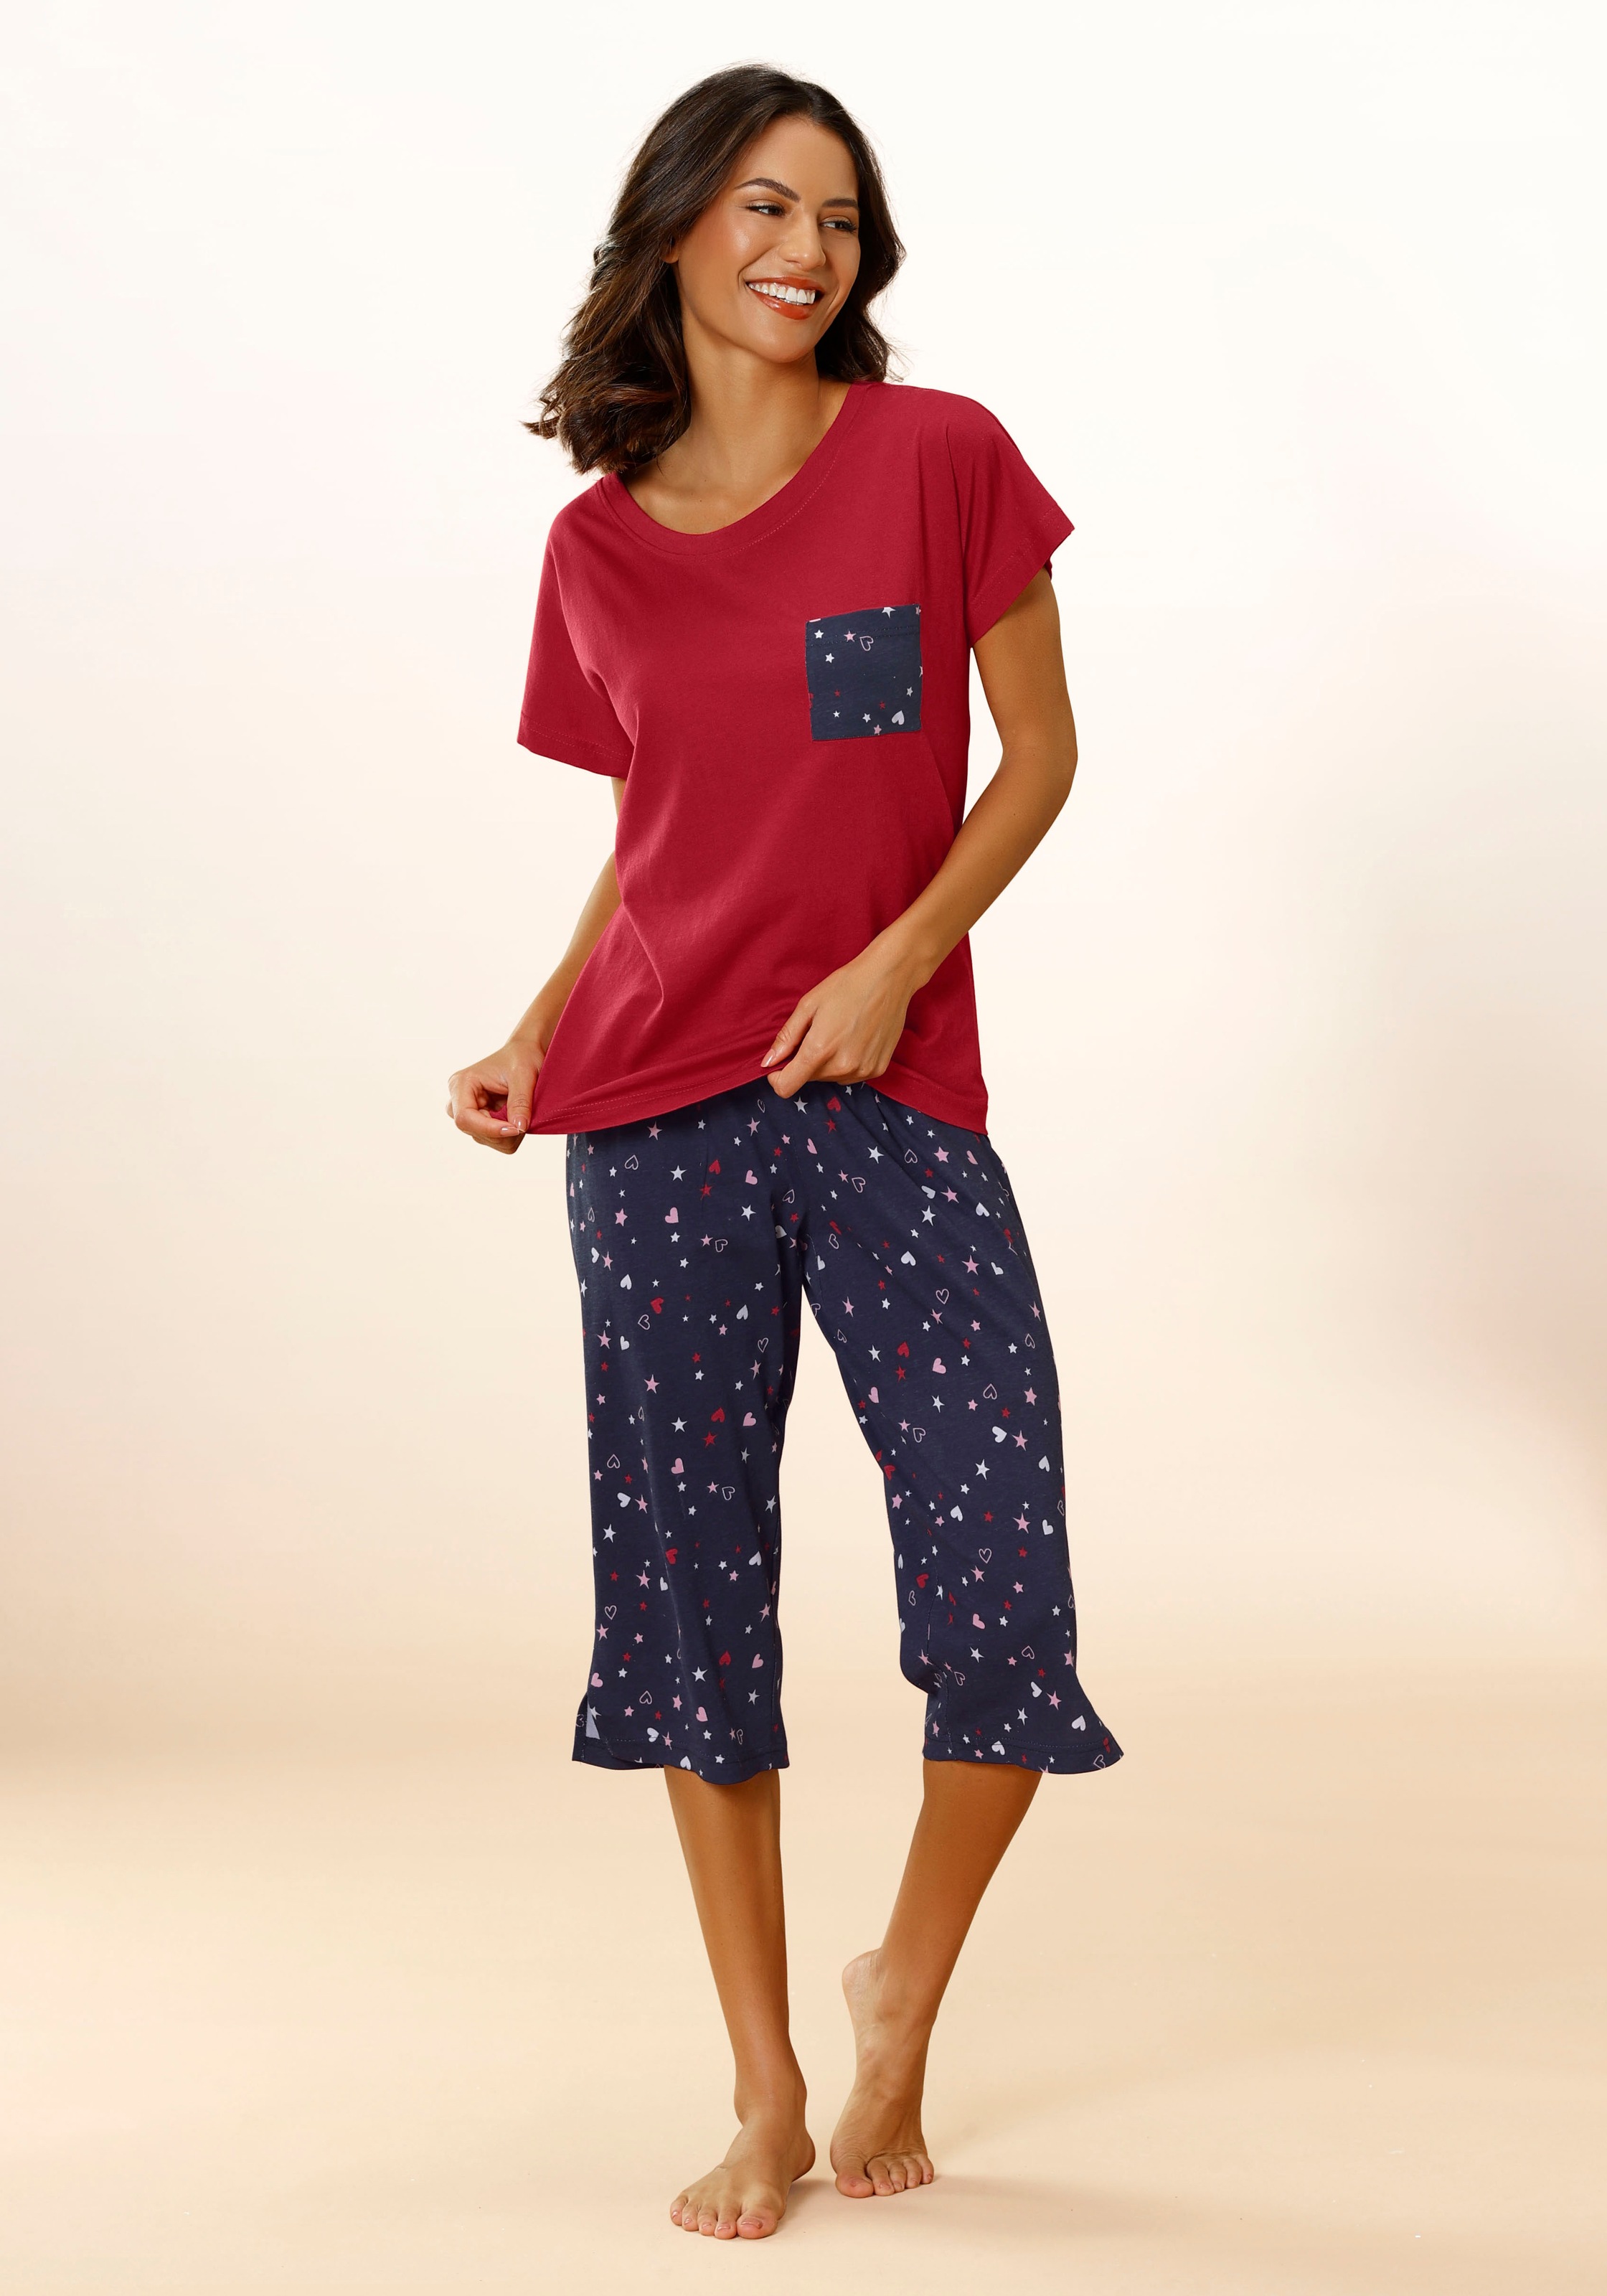 supergünstige Marken Vivance Dreams Hortensienmuster mit Pyjama